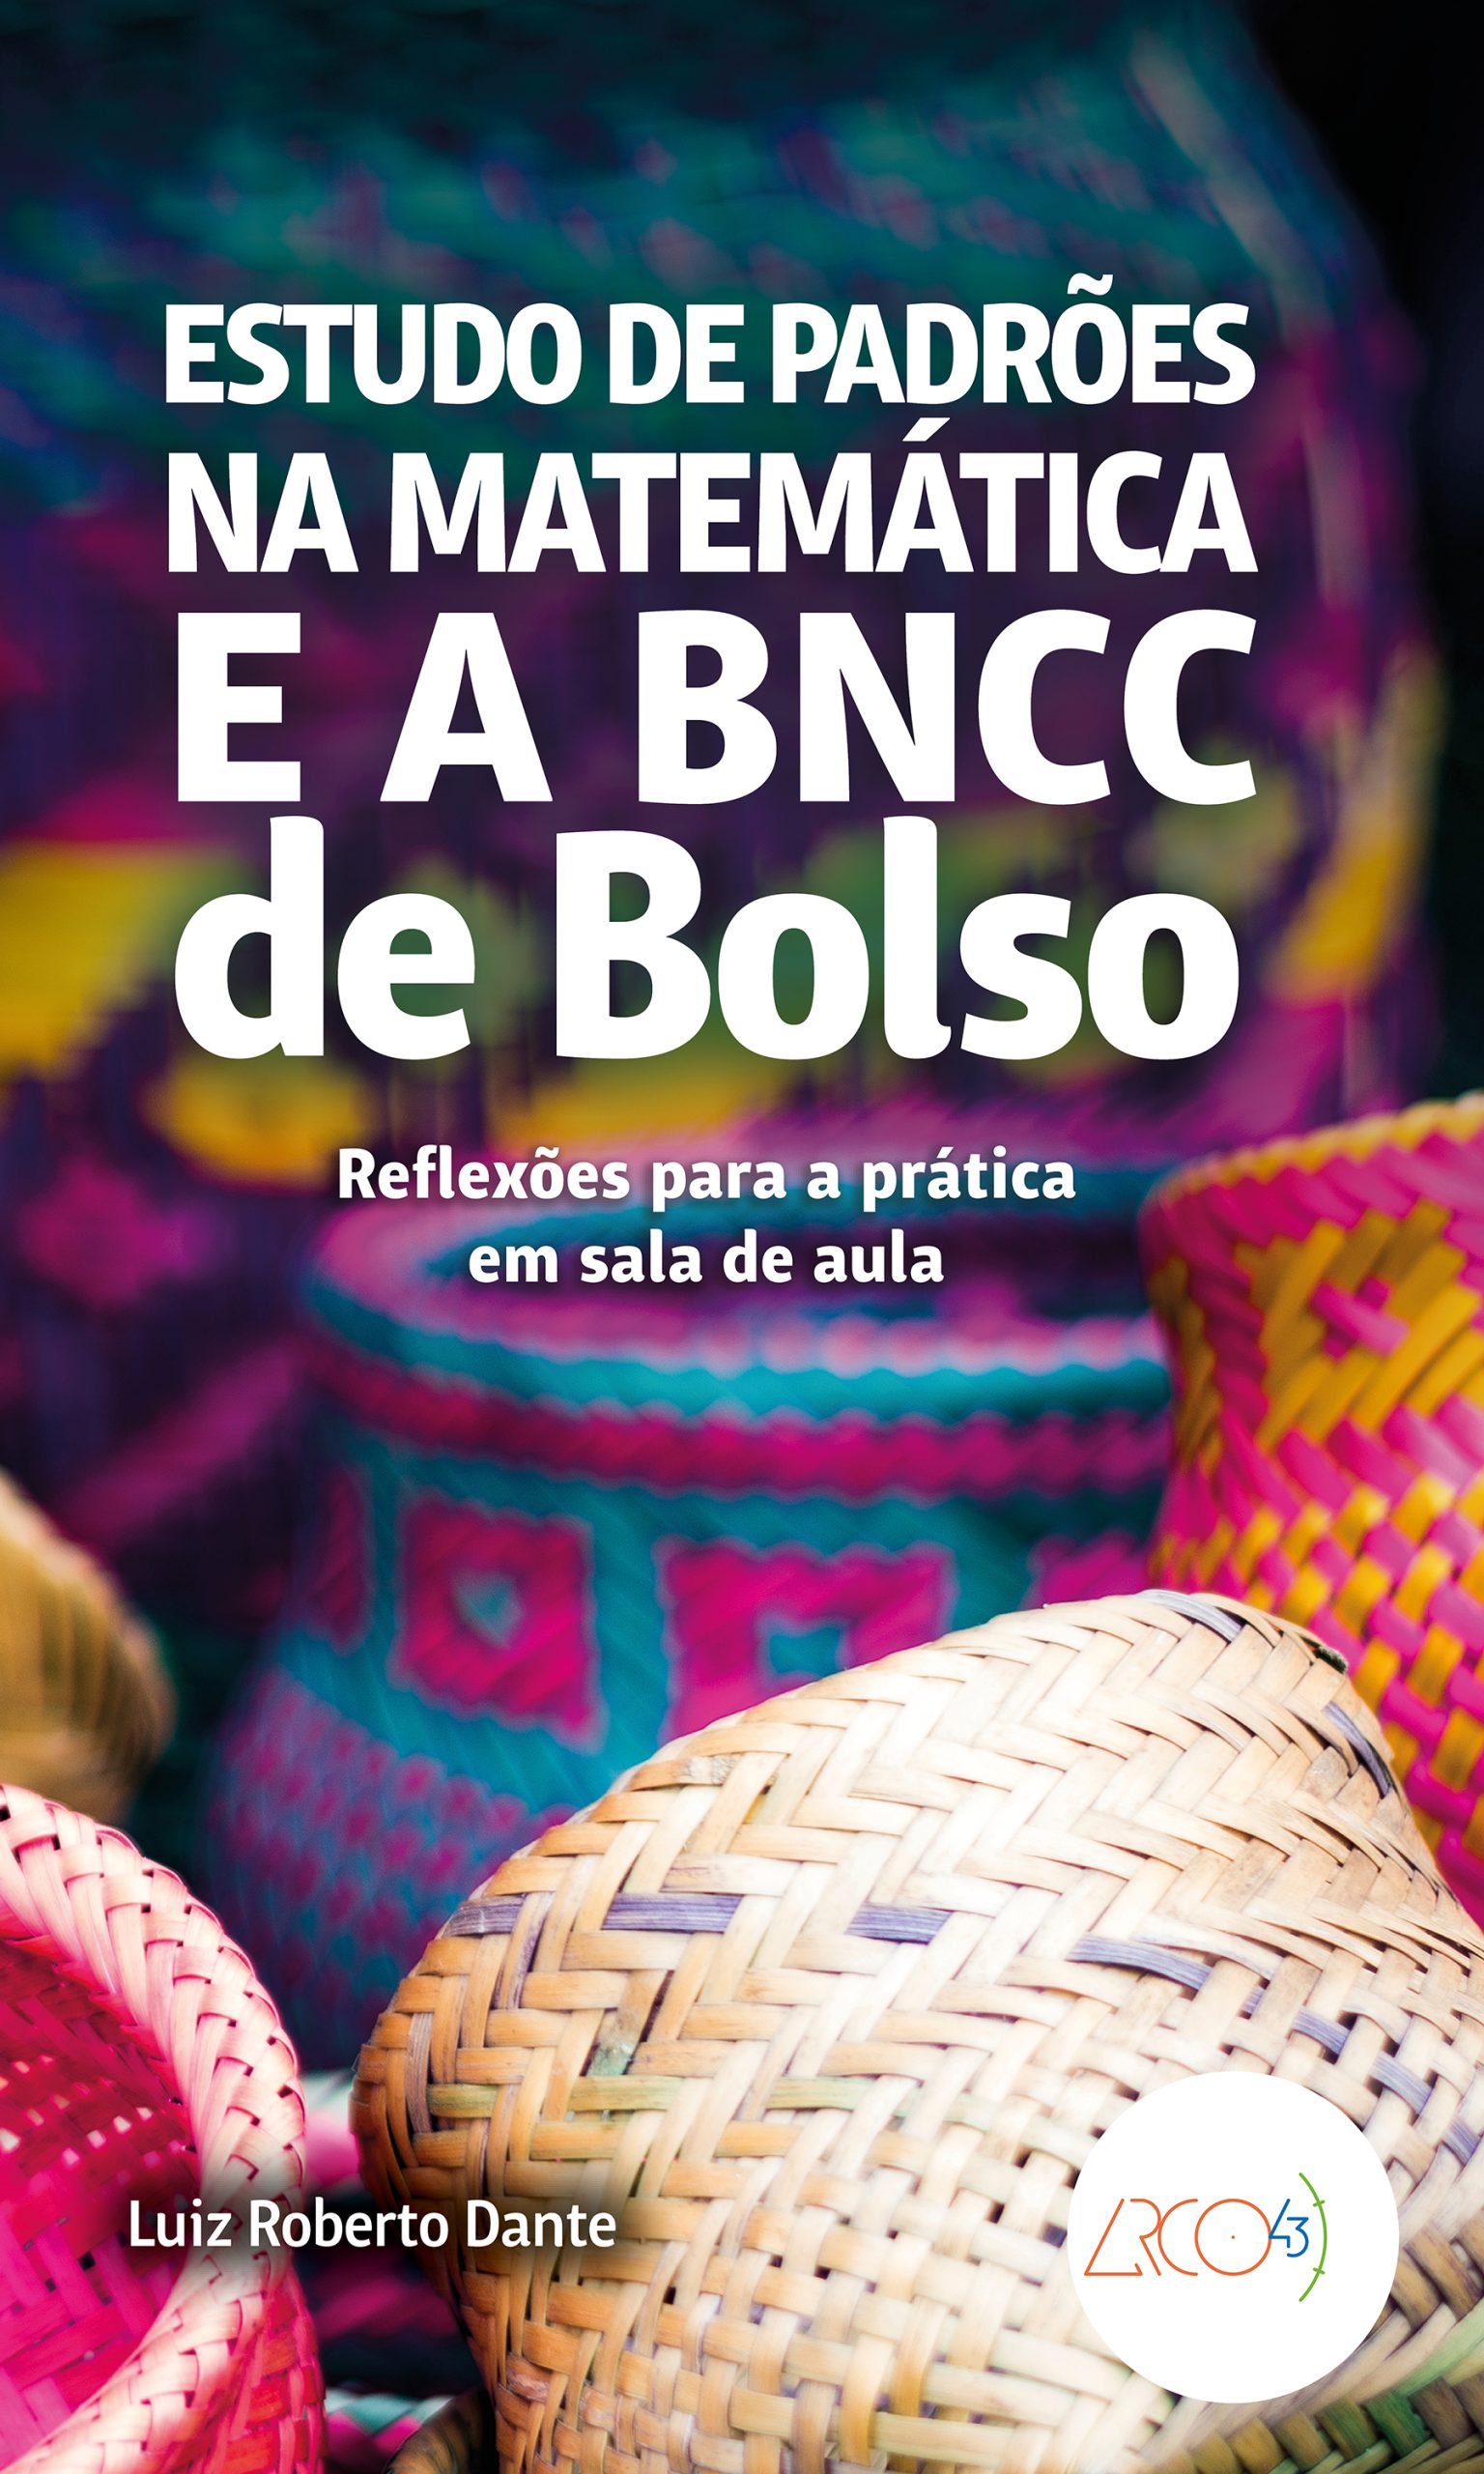 Estudo de padrões na Matemática e a BNCC de bolso - Reflexões para a prática em sala de aula